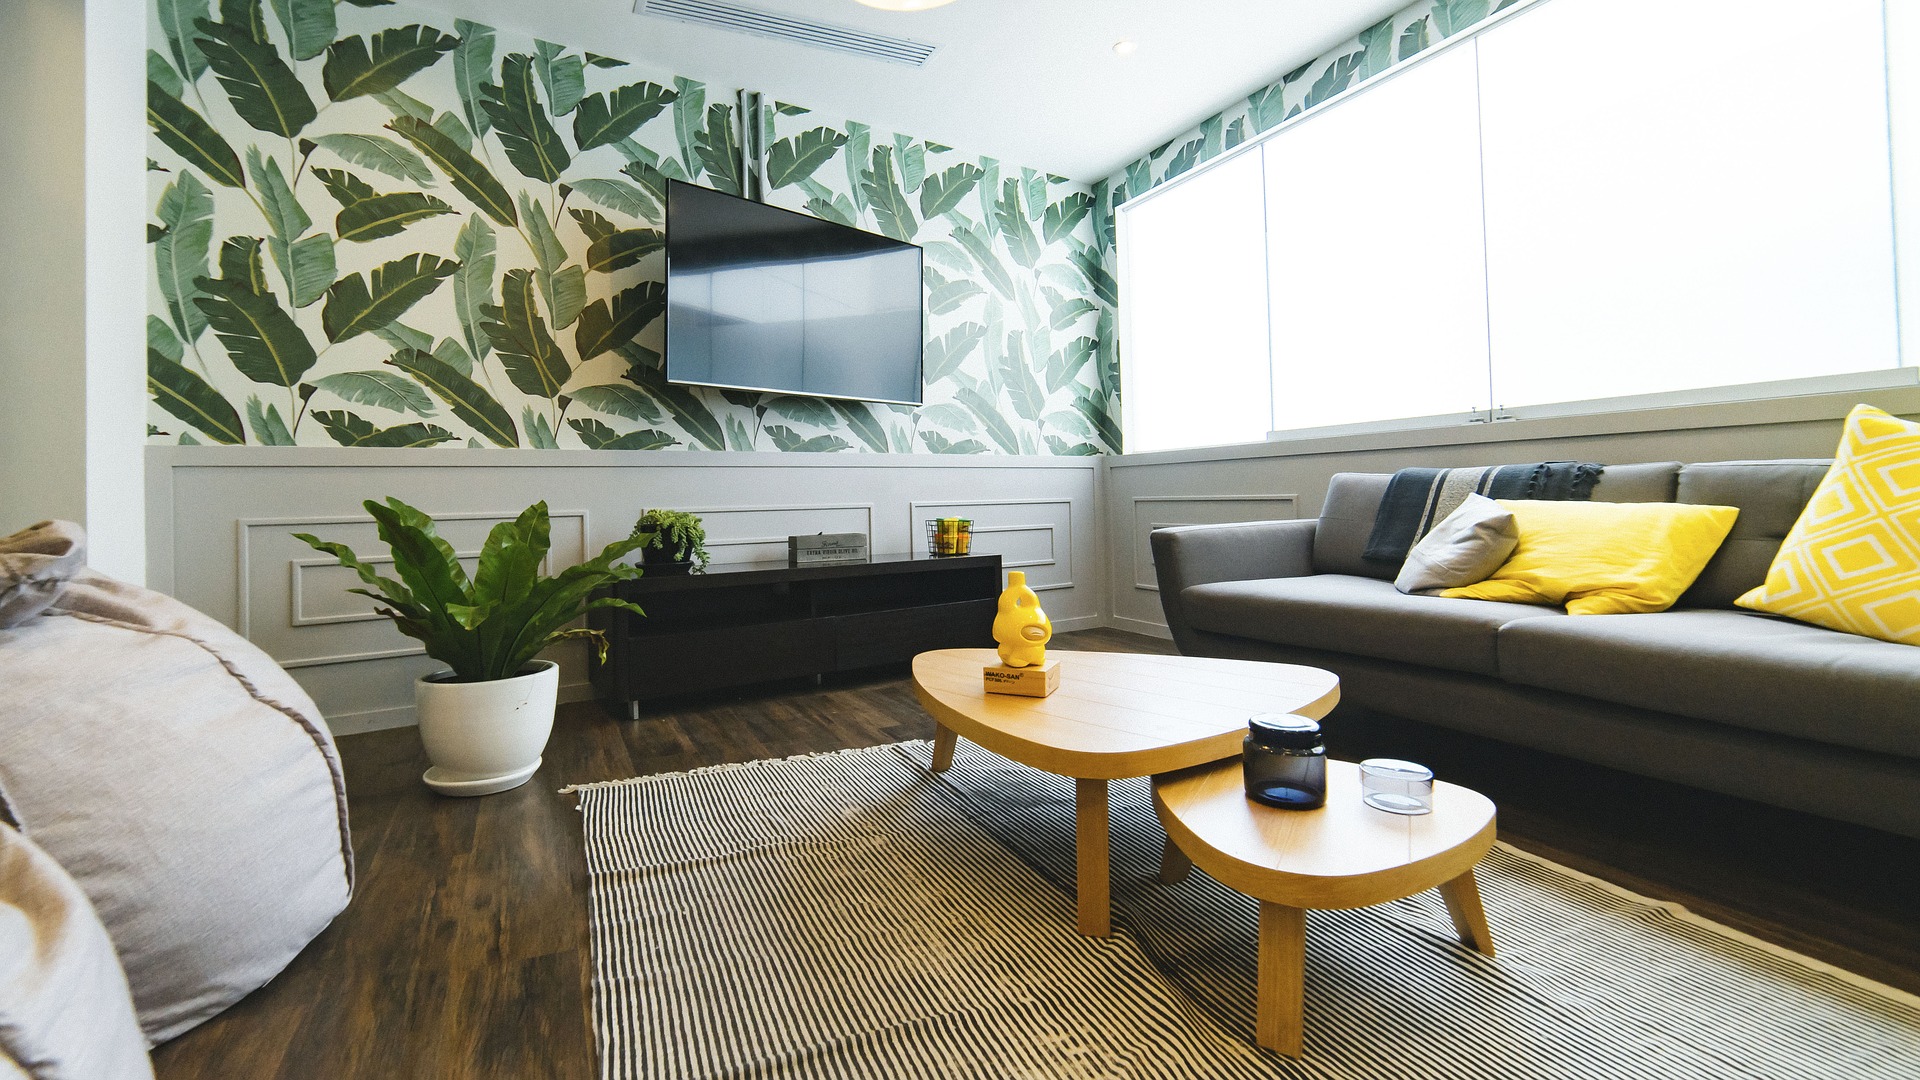 moderný interiér obývacej miestnosti s tapetou na stene a výraznou farebnou kombináciou